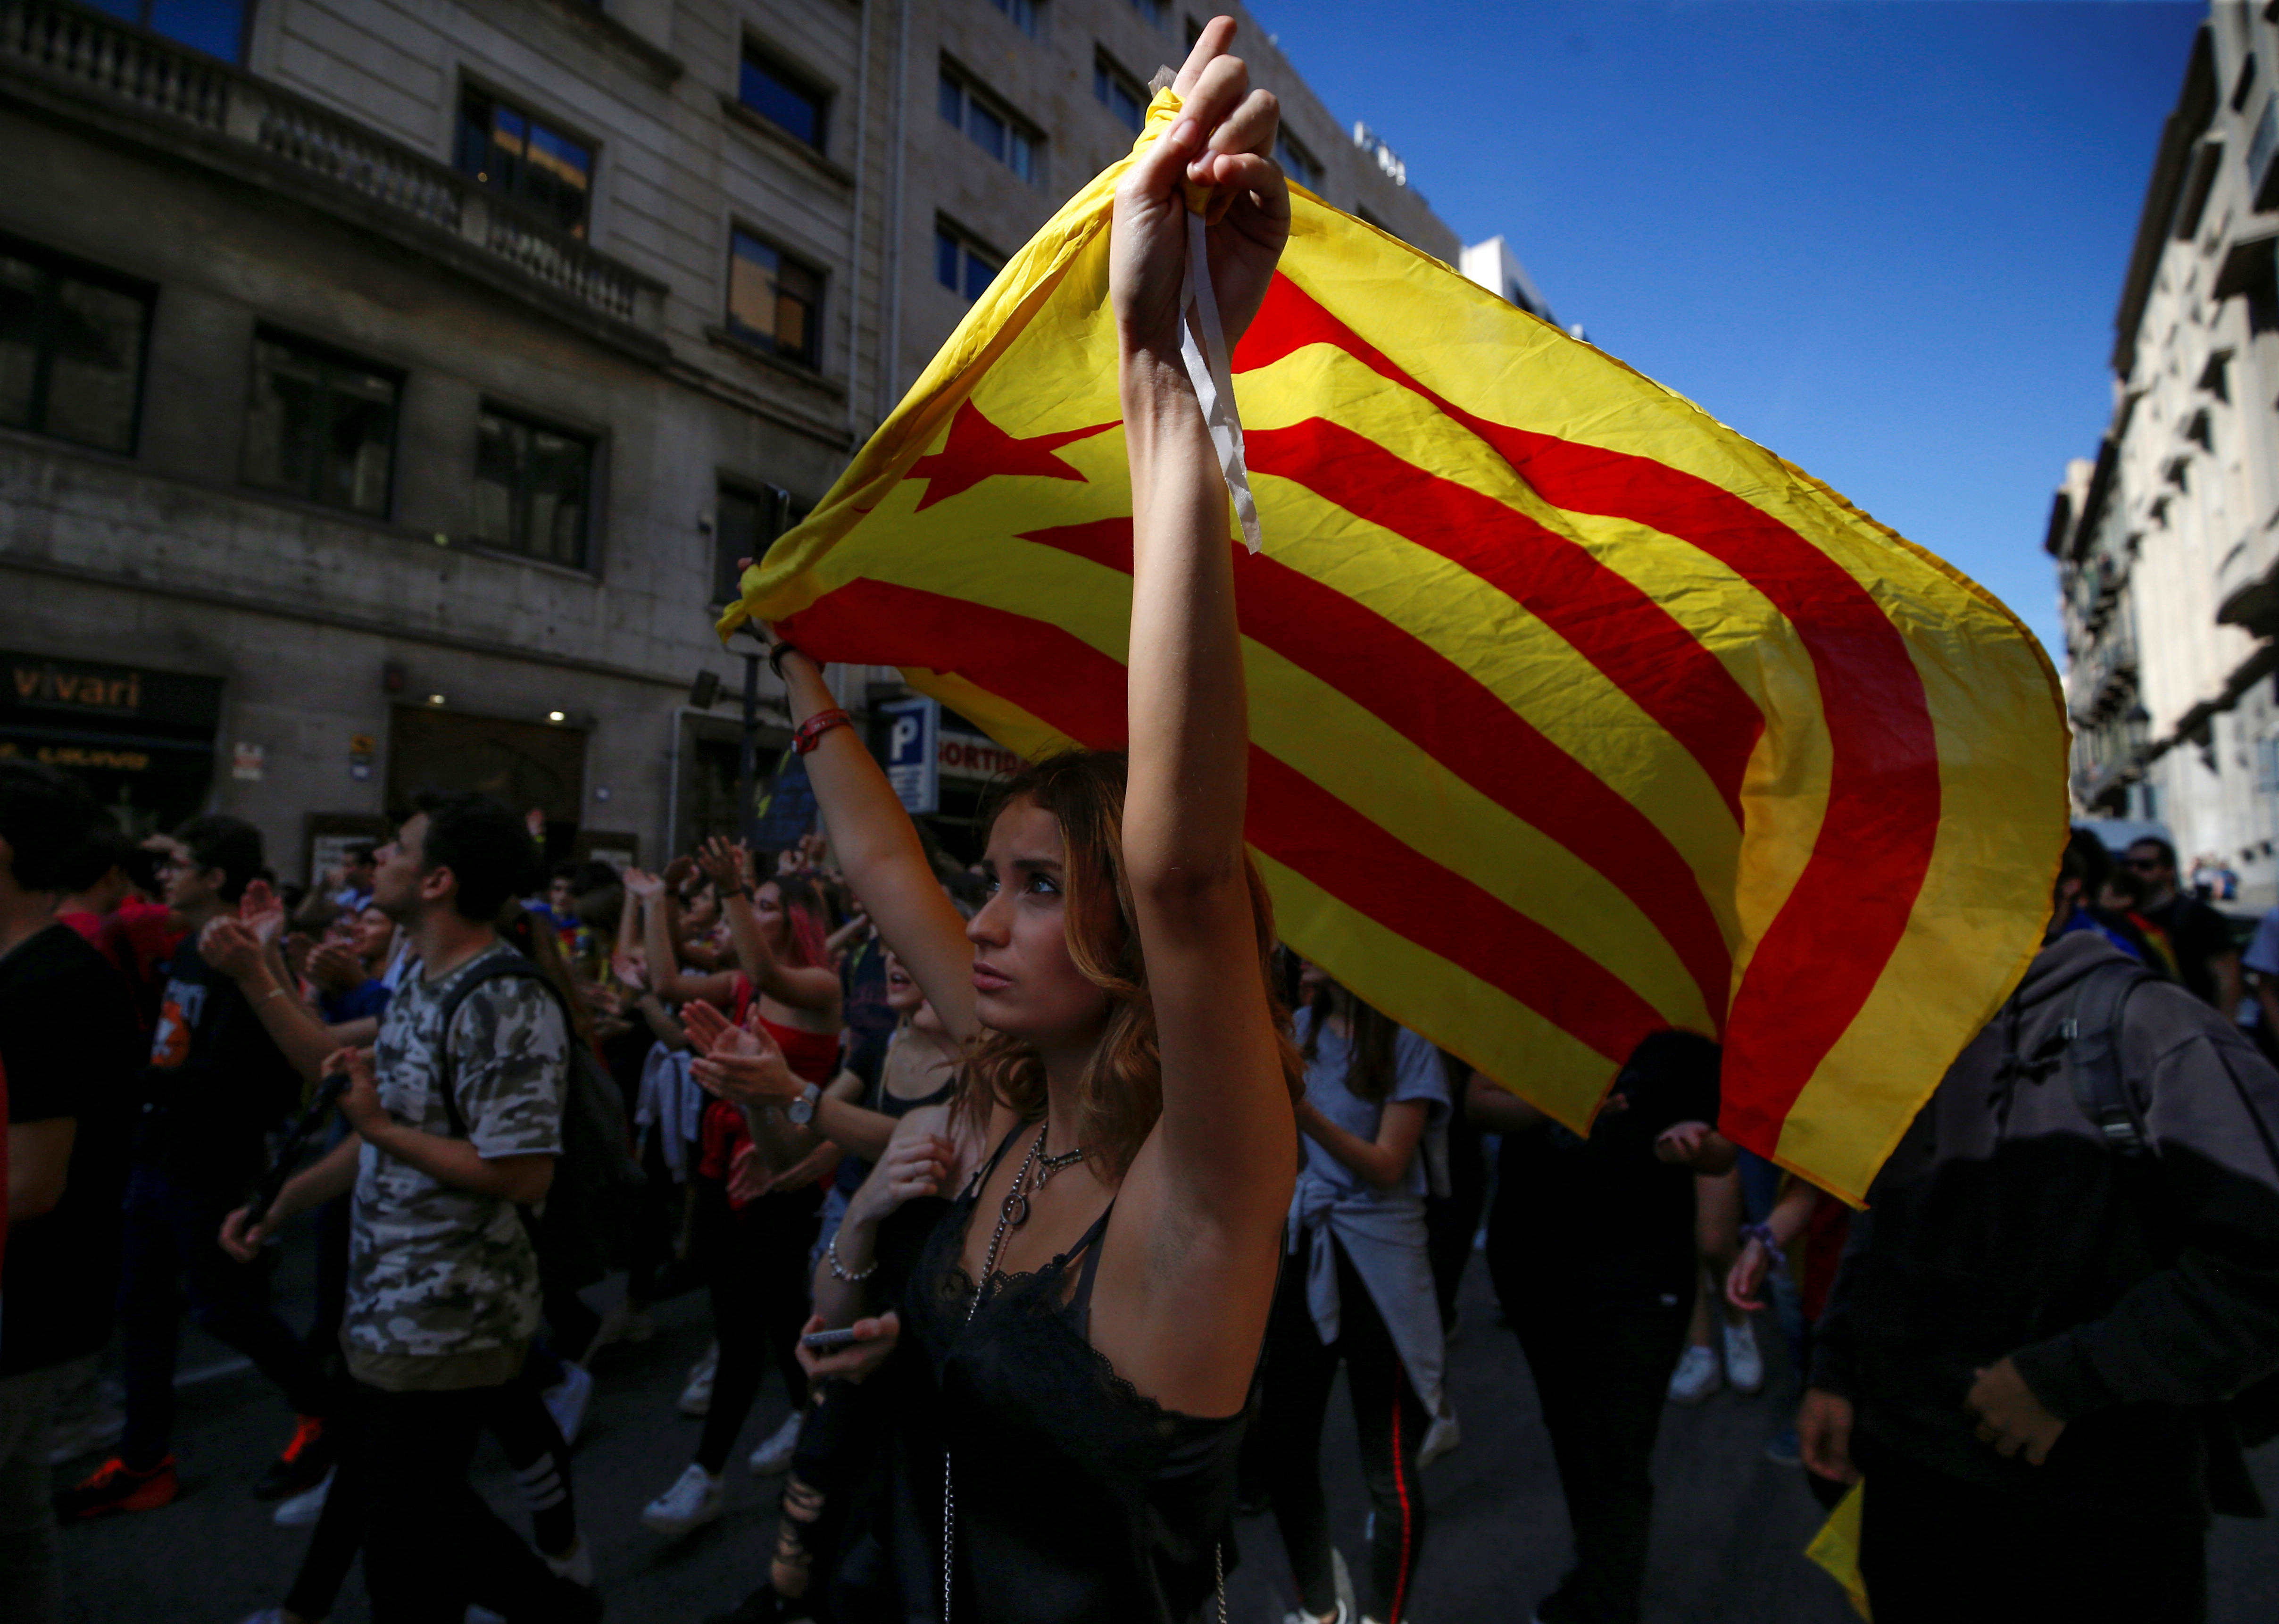 La tensión crece en Cataluña tras el amago de convocatoria a nuevo referéndum ilegal